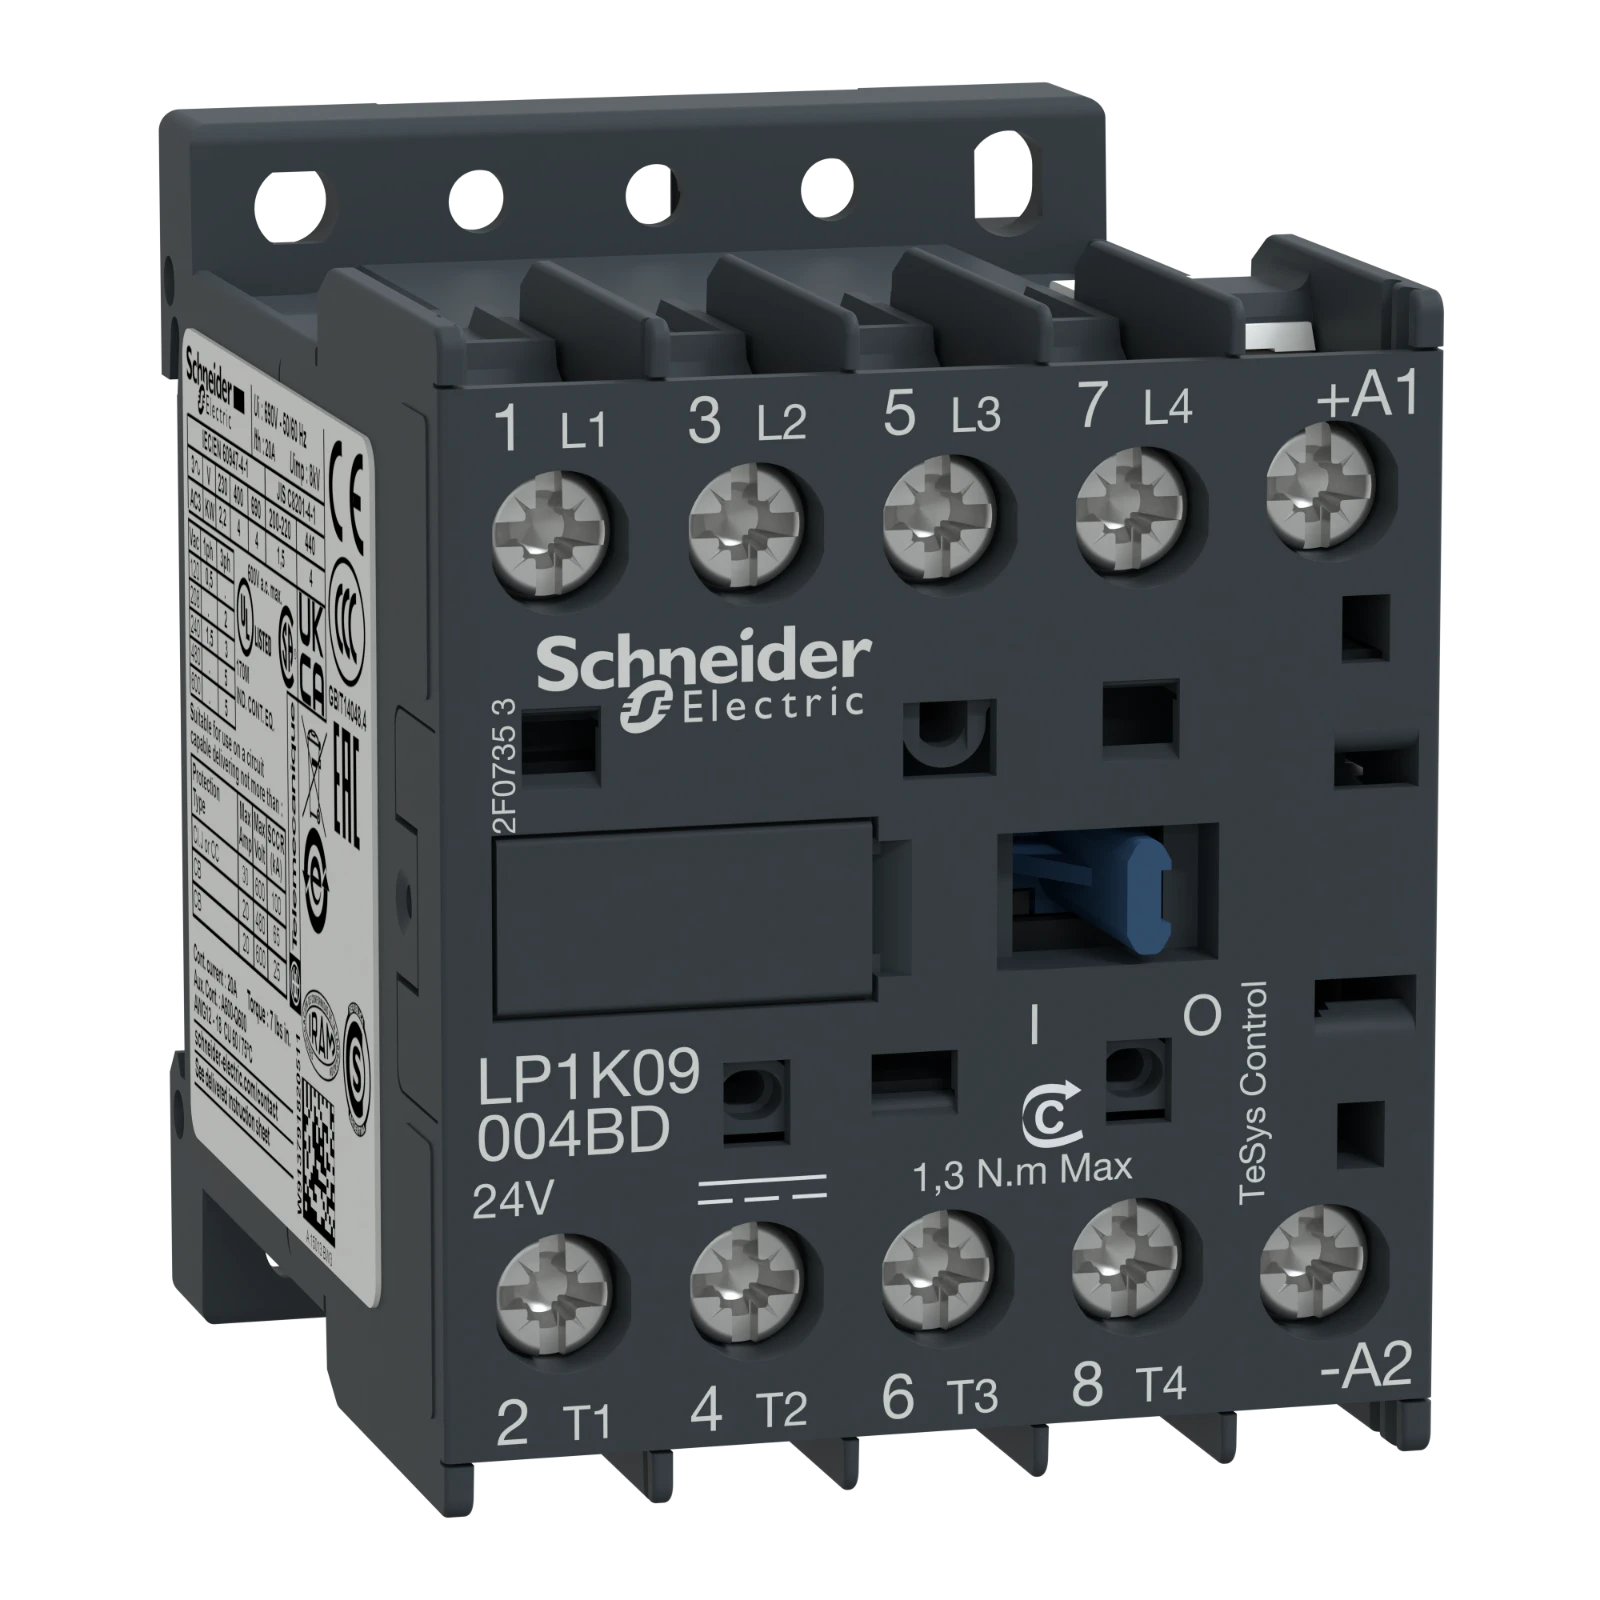 2339661 - Schneider Electric LP1K09004JD